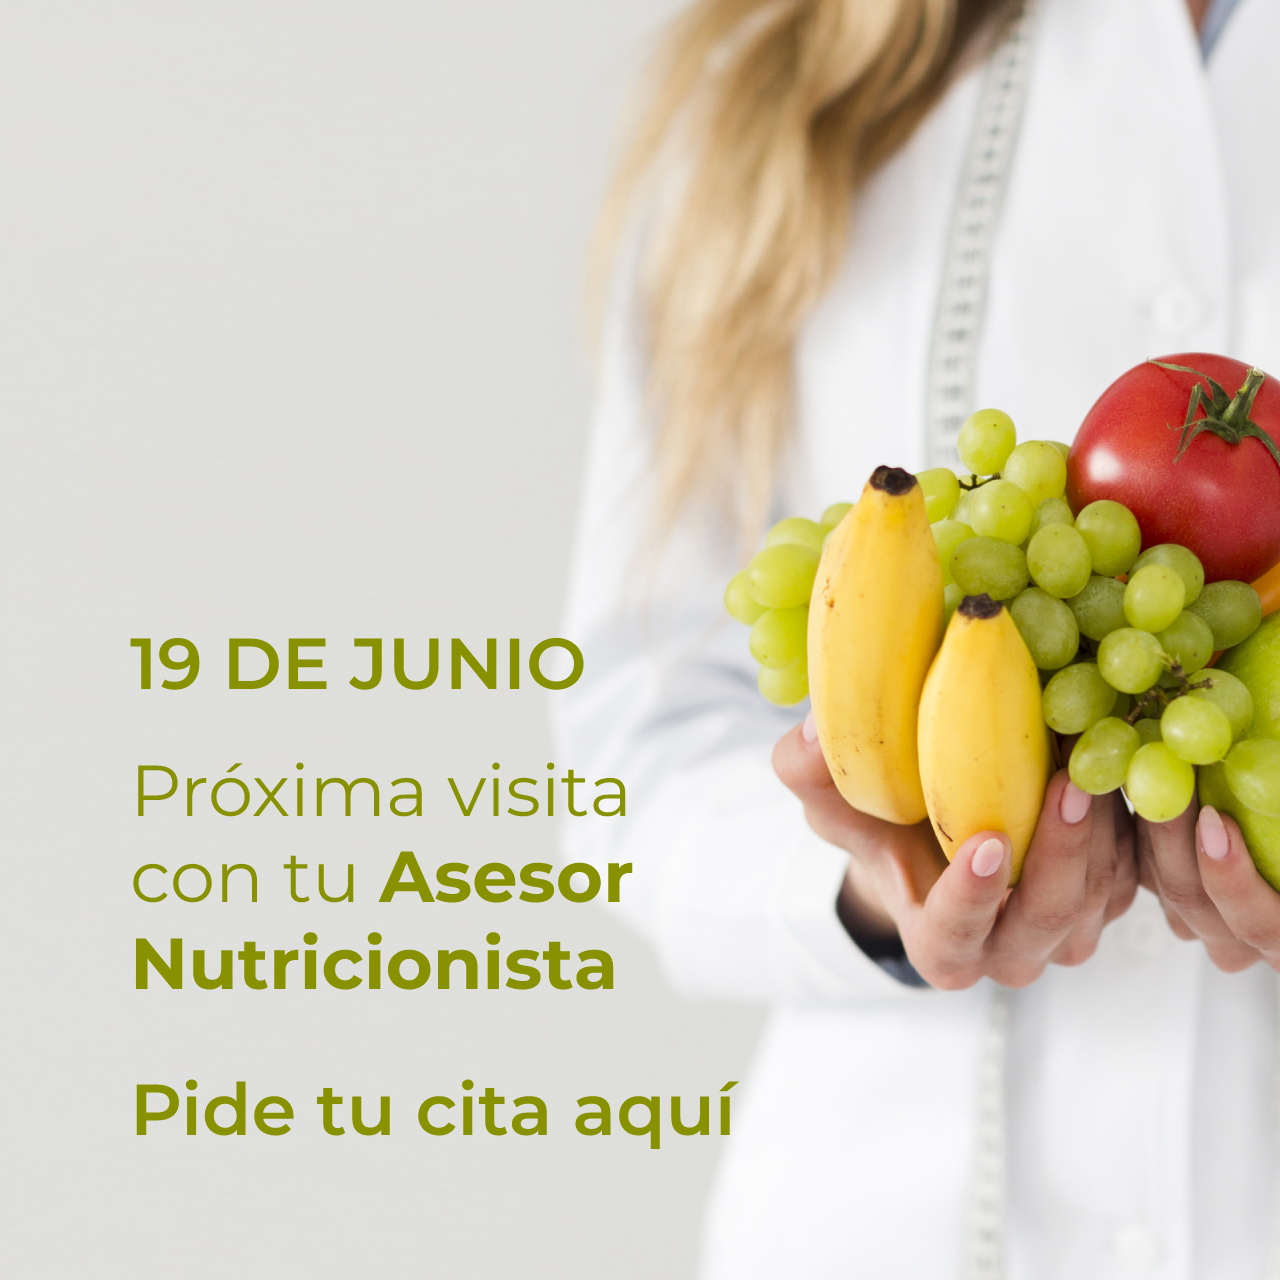 19 de junio: próxima visita con tu Asesor Nutricionista. ¡Pide cita!